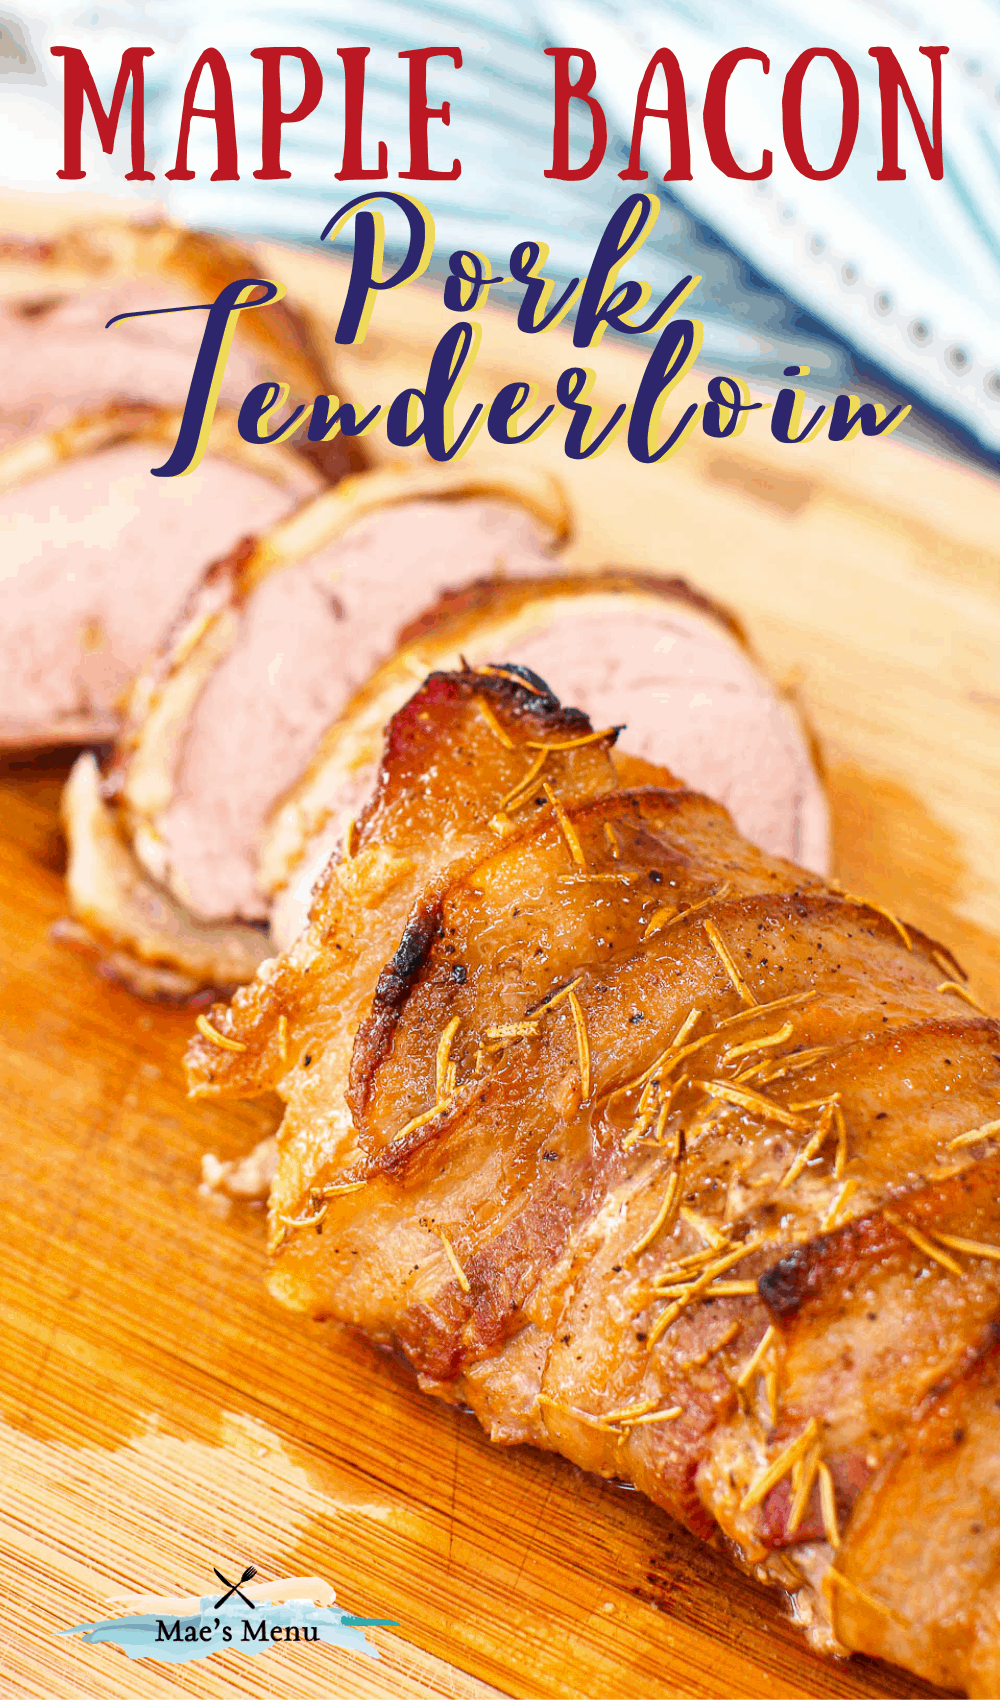 "maple bacon wrapped pork tenderloin with a sliced pork tenderloin 